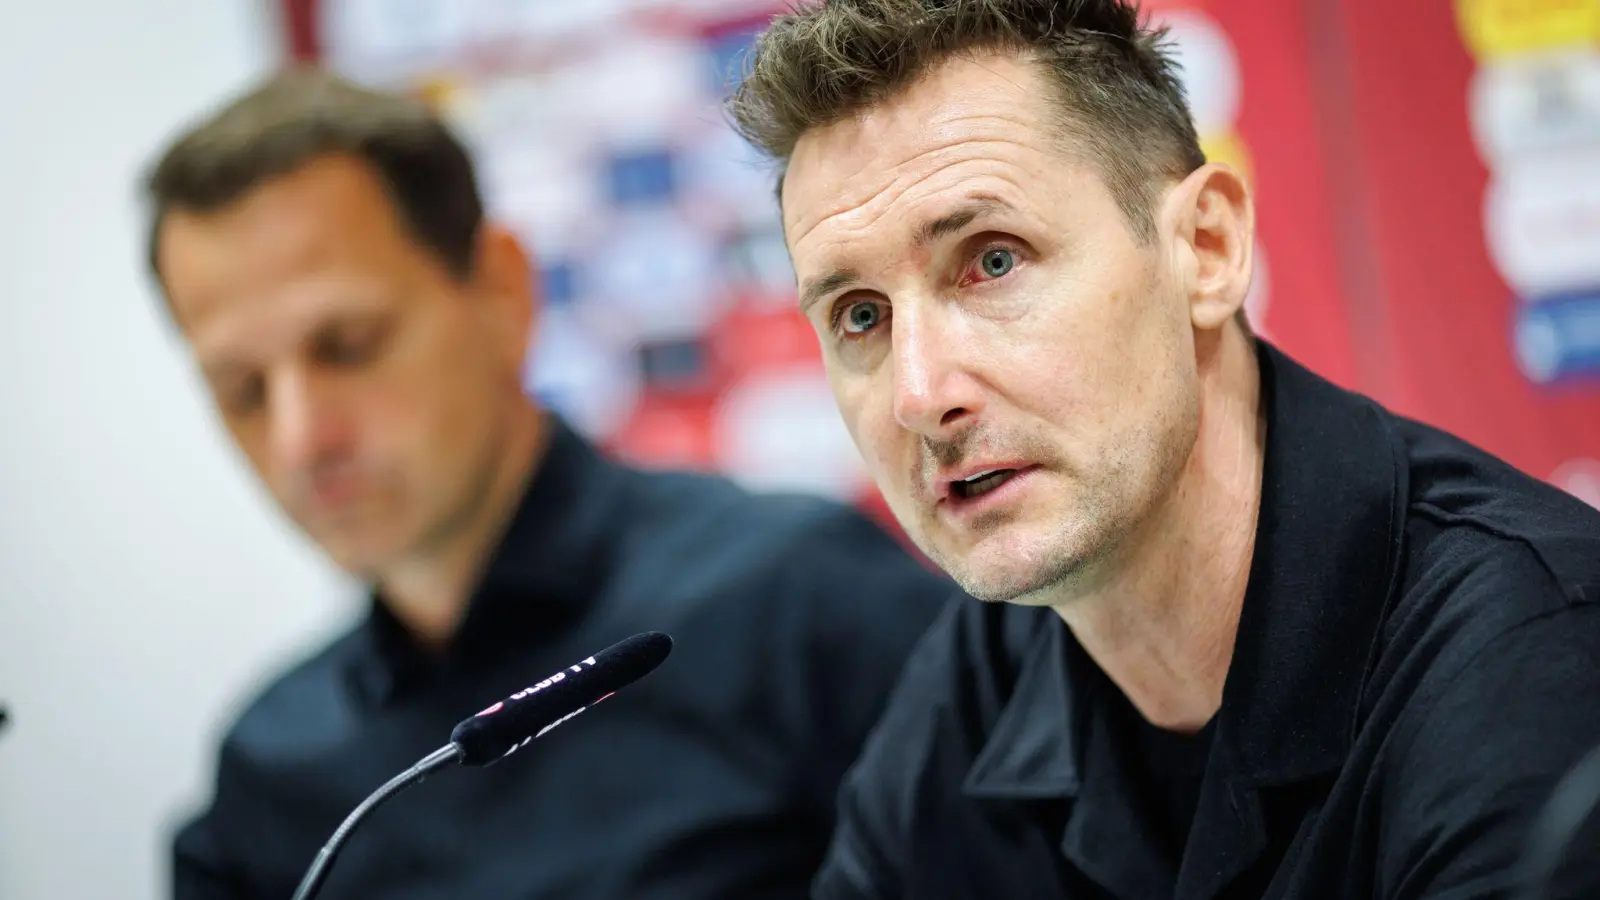 Miroslav Klose wird als neuer Trainer beim 1. FC Nürnberg vorgestellt. (Bild: Daniel Karmann/dpa)